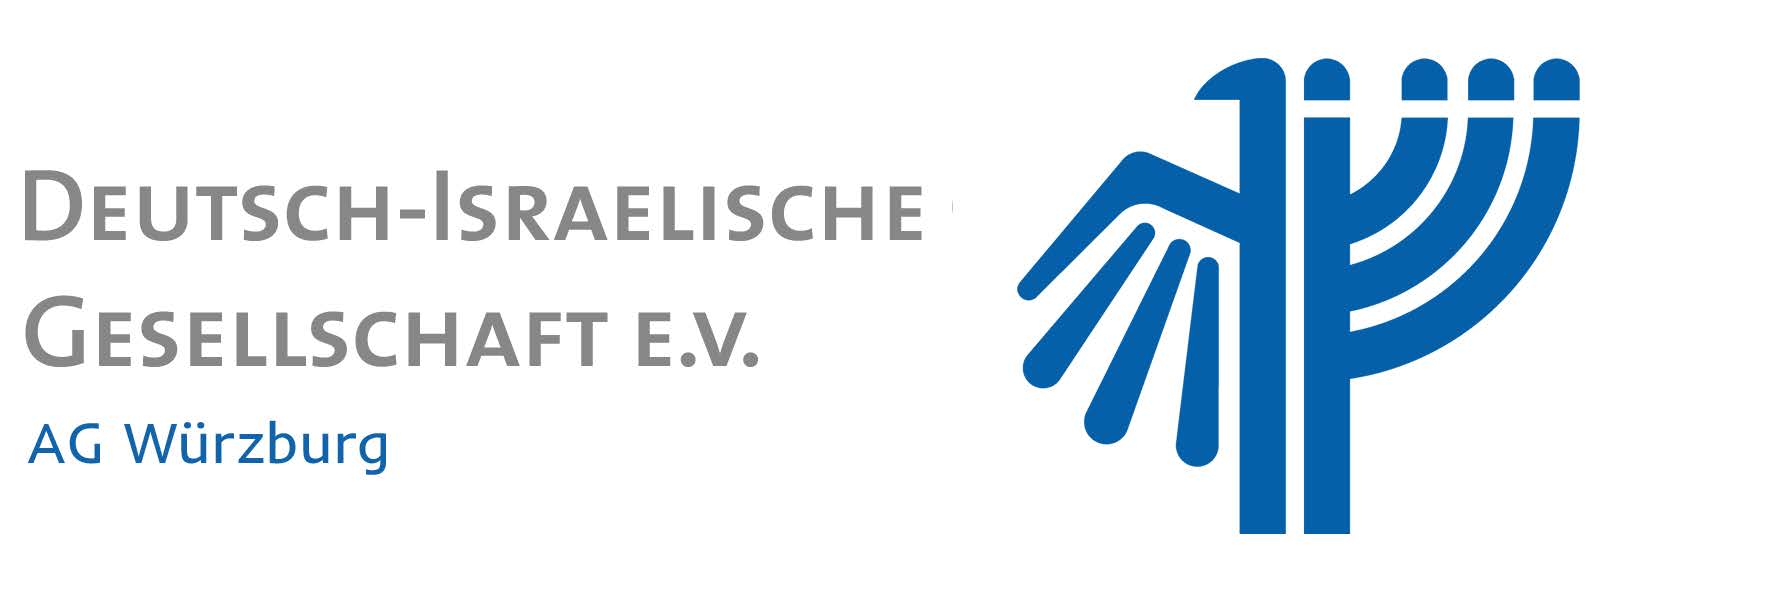 Logo der Deutsch-Israelische Gesellschaft E.V. AG Würzburg